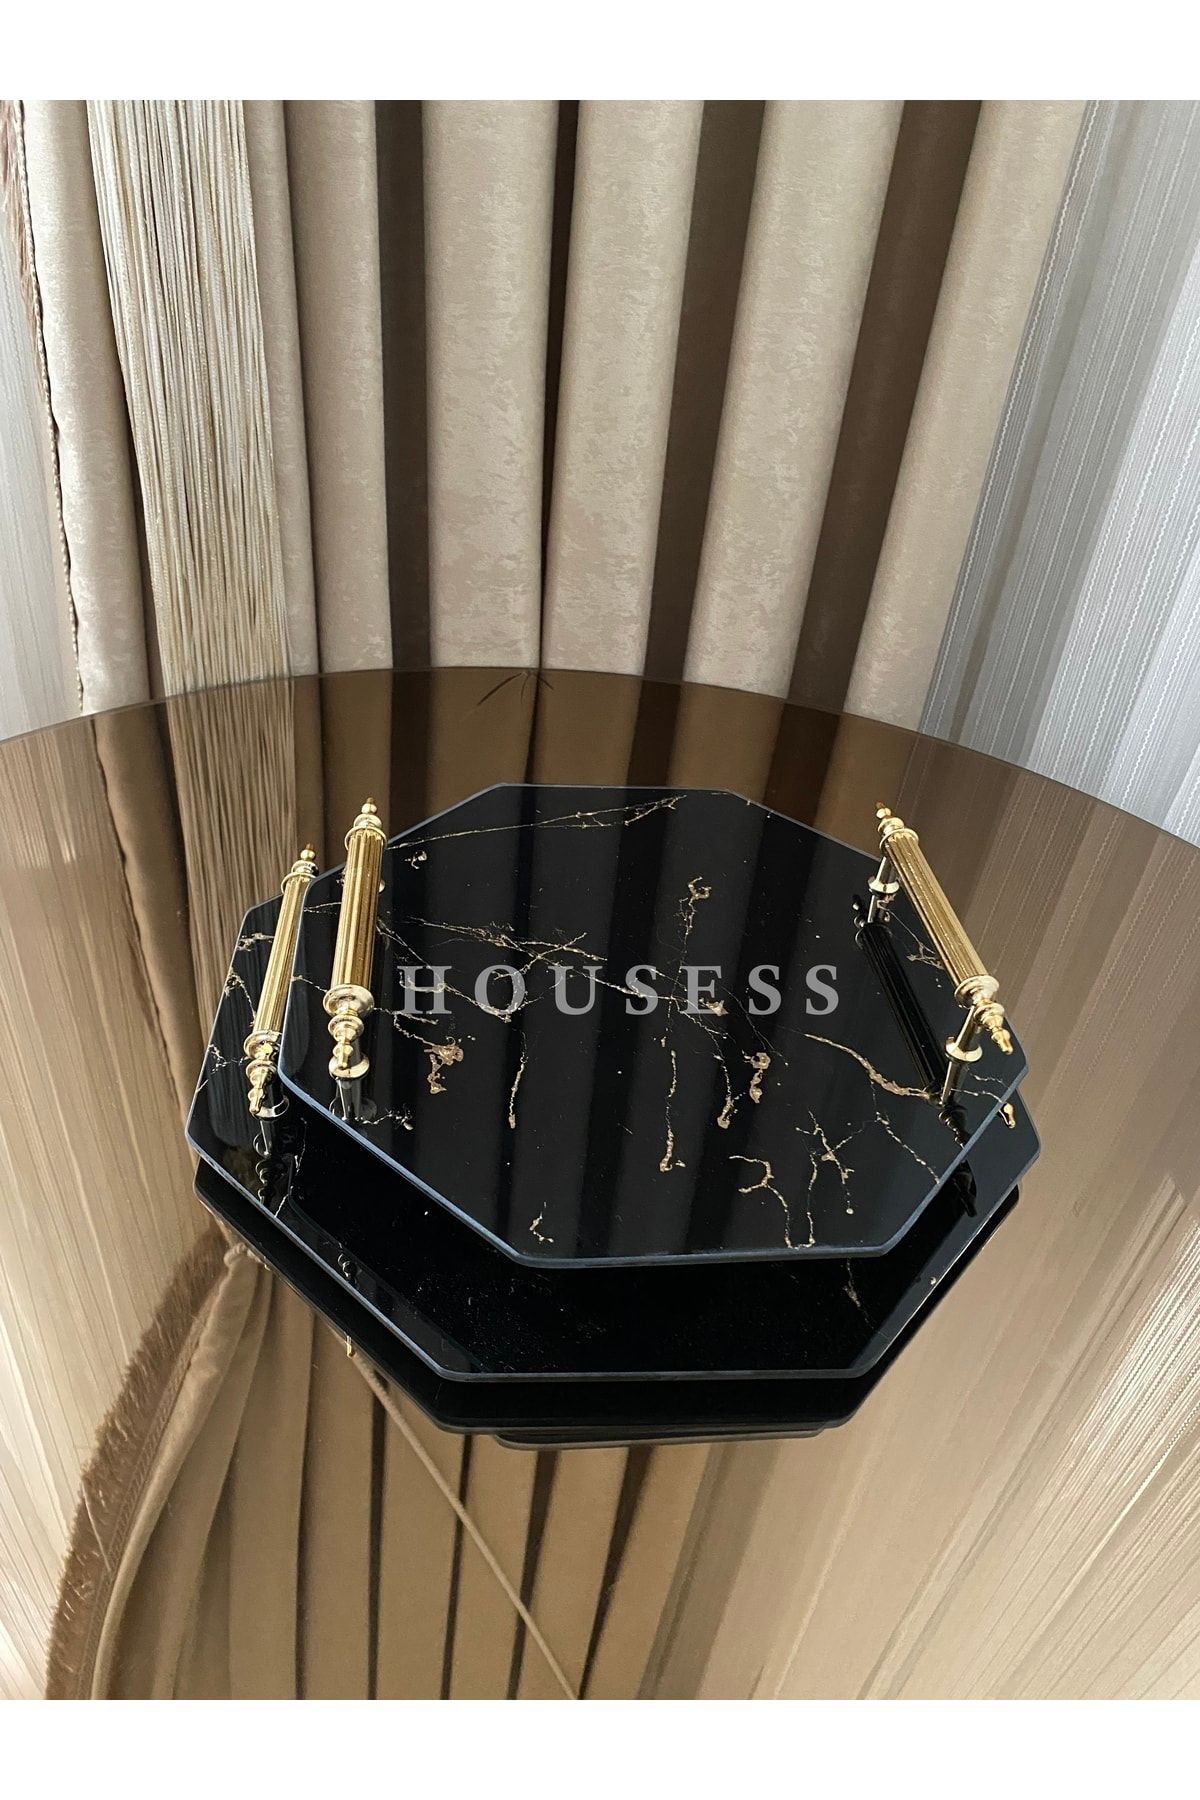 Housess 2'li Söz Nişan Kına Tepsisi Siyah Mermer Desenli Cam Dekoratif Sekizgen Tepsi